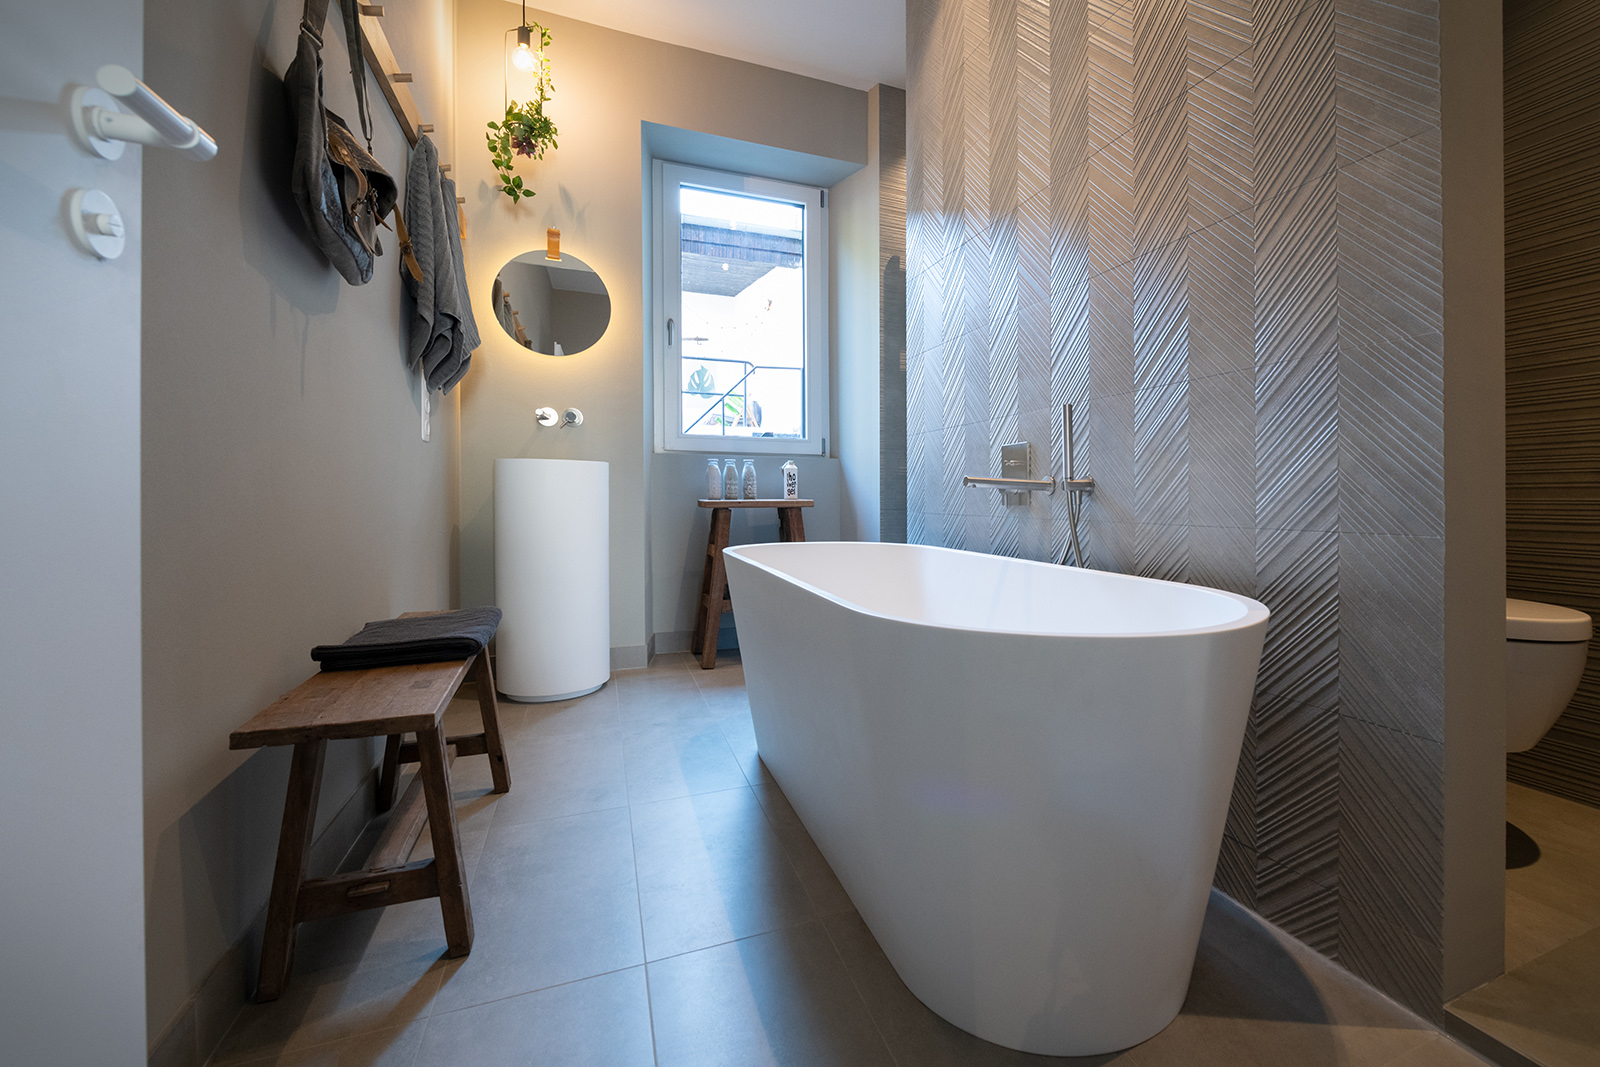 Übersicht Bad: Freistehende Badewanne vor Strukturfliesen und stimmunngsvoll beleuchteter Waschbereich